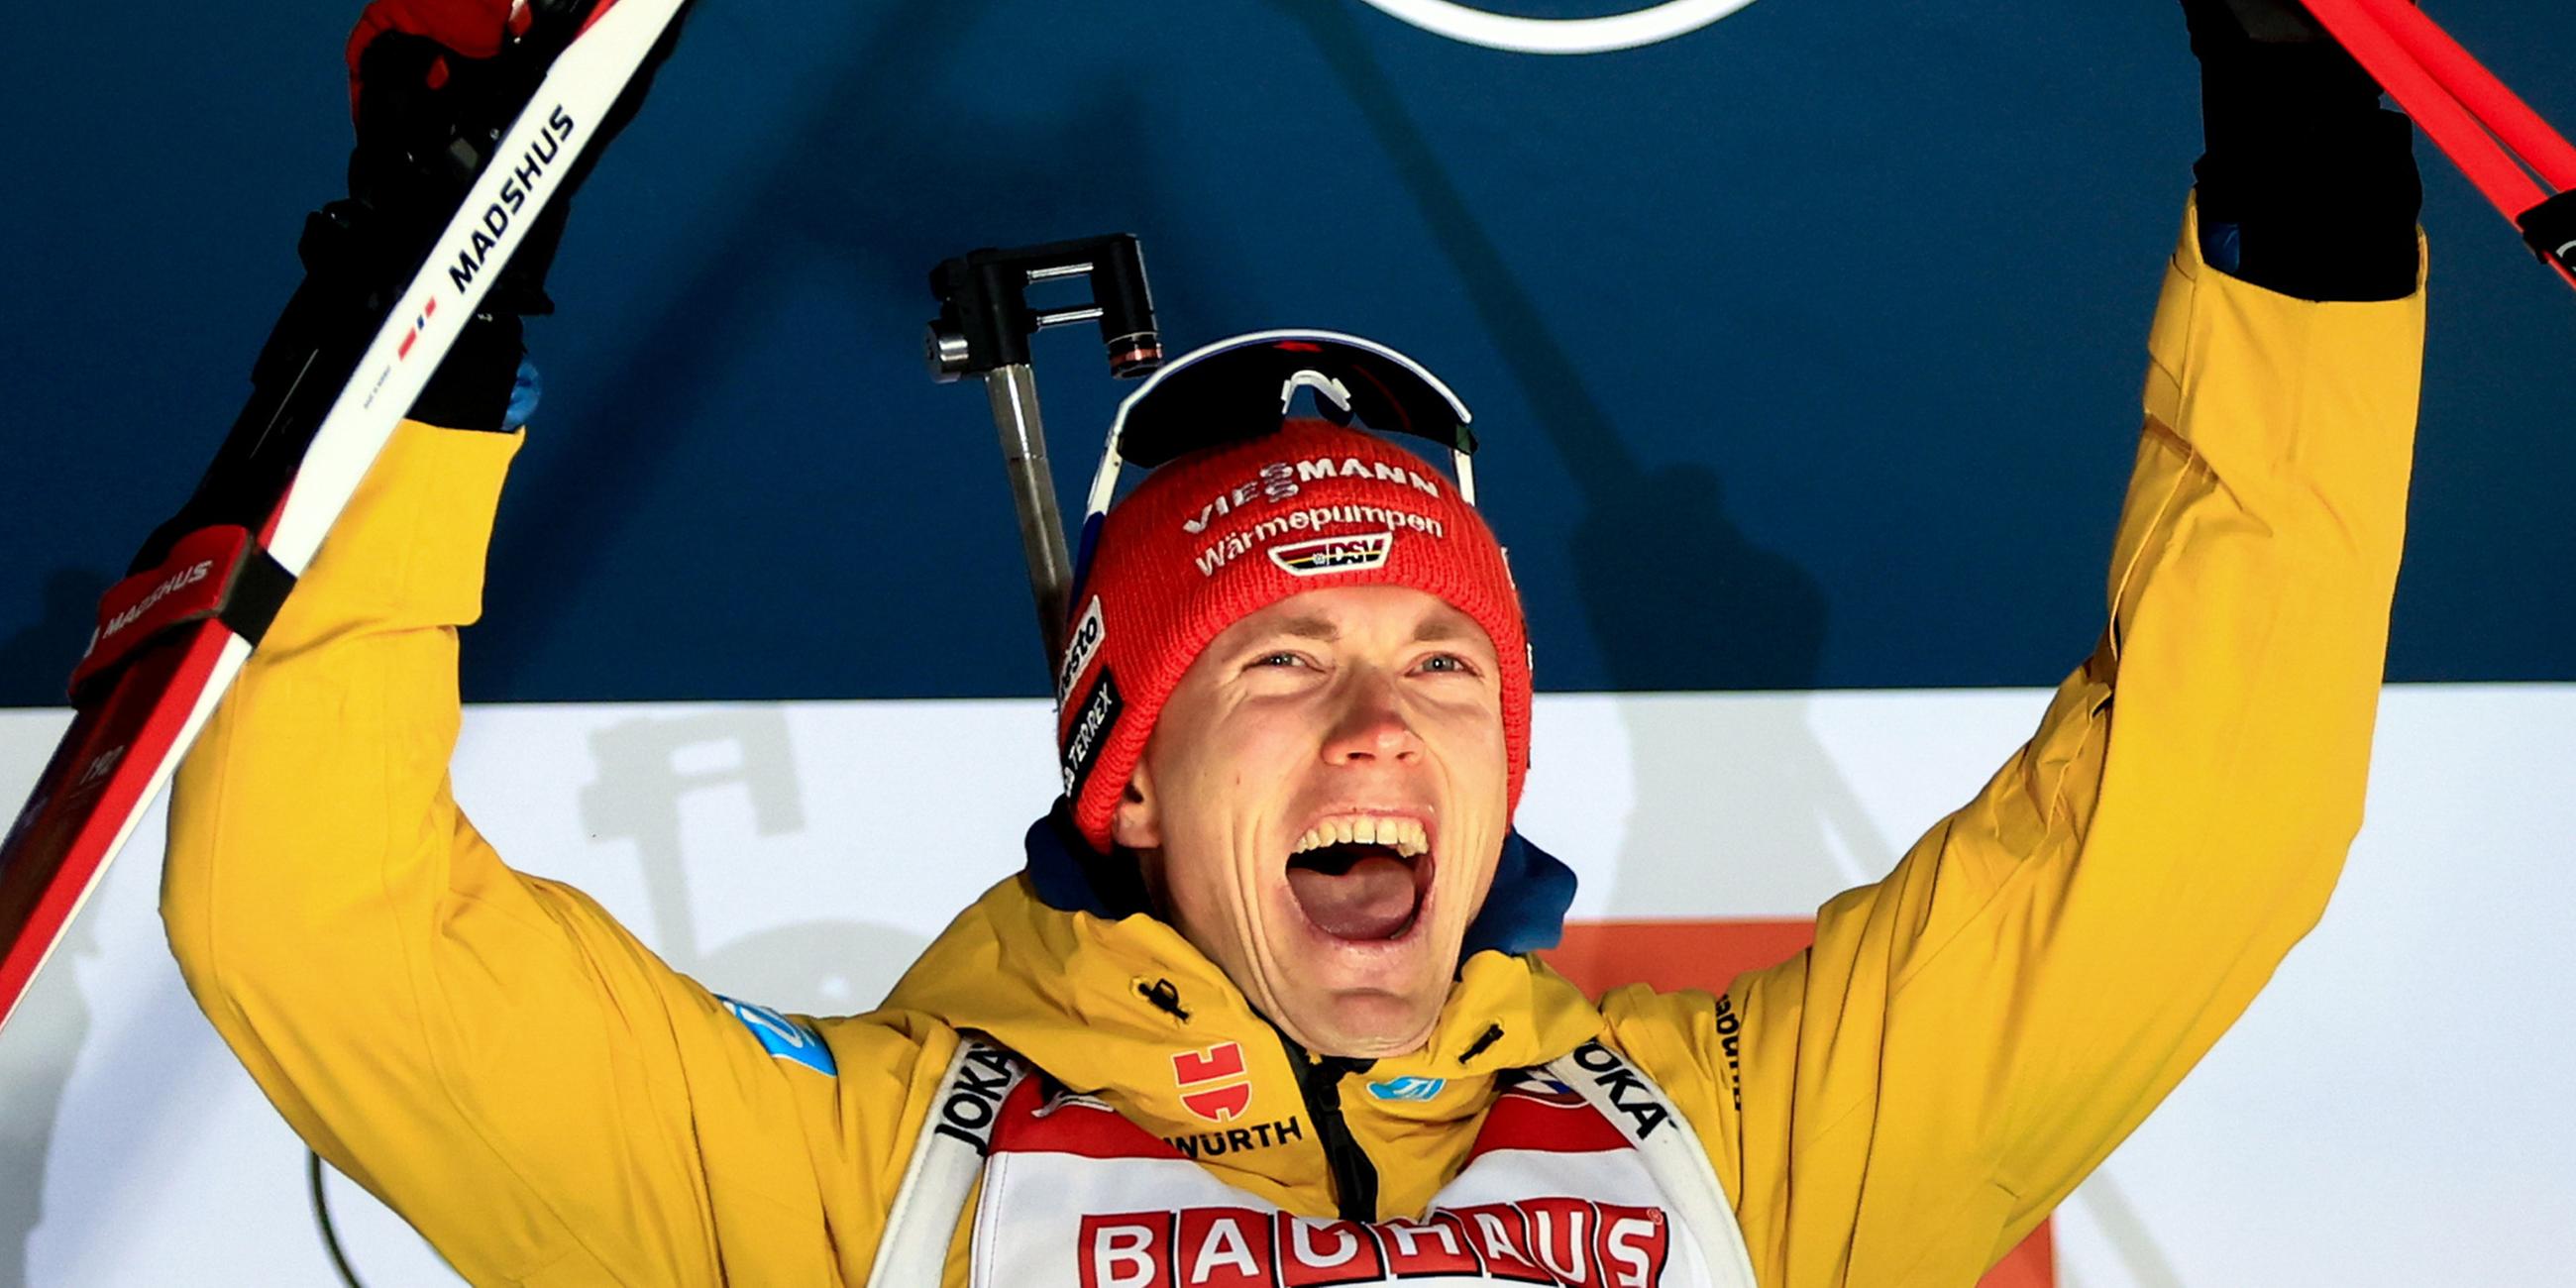 Der Bronzemedaillengewinner Benedikt Doll aus Deutschland jubelt auf dem Podium des 20-km-Einzelrennens der Männer bei den Biathlon-Weltmeisterschaften in Nove Mesto.